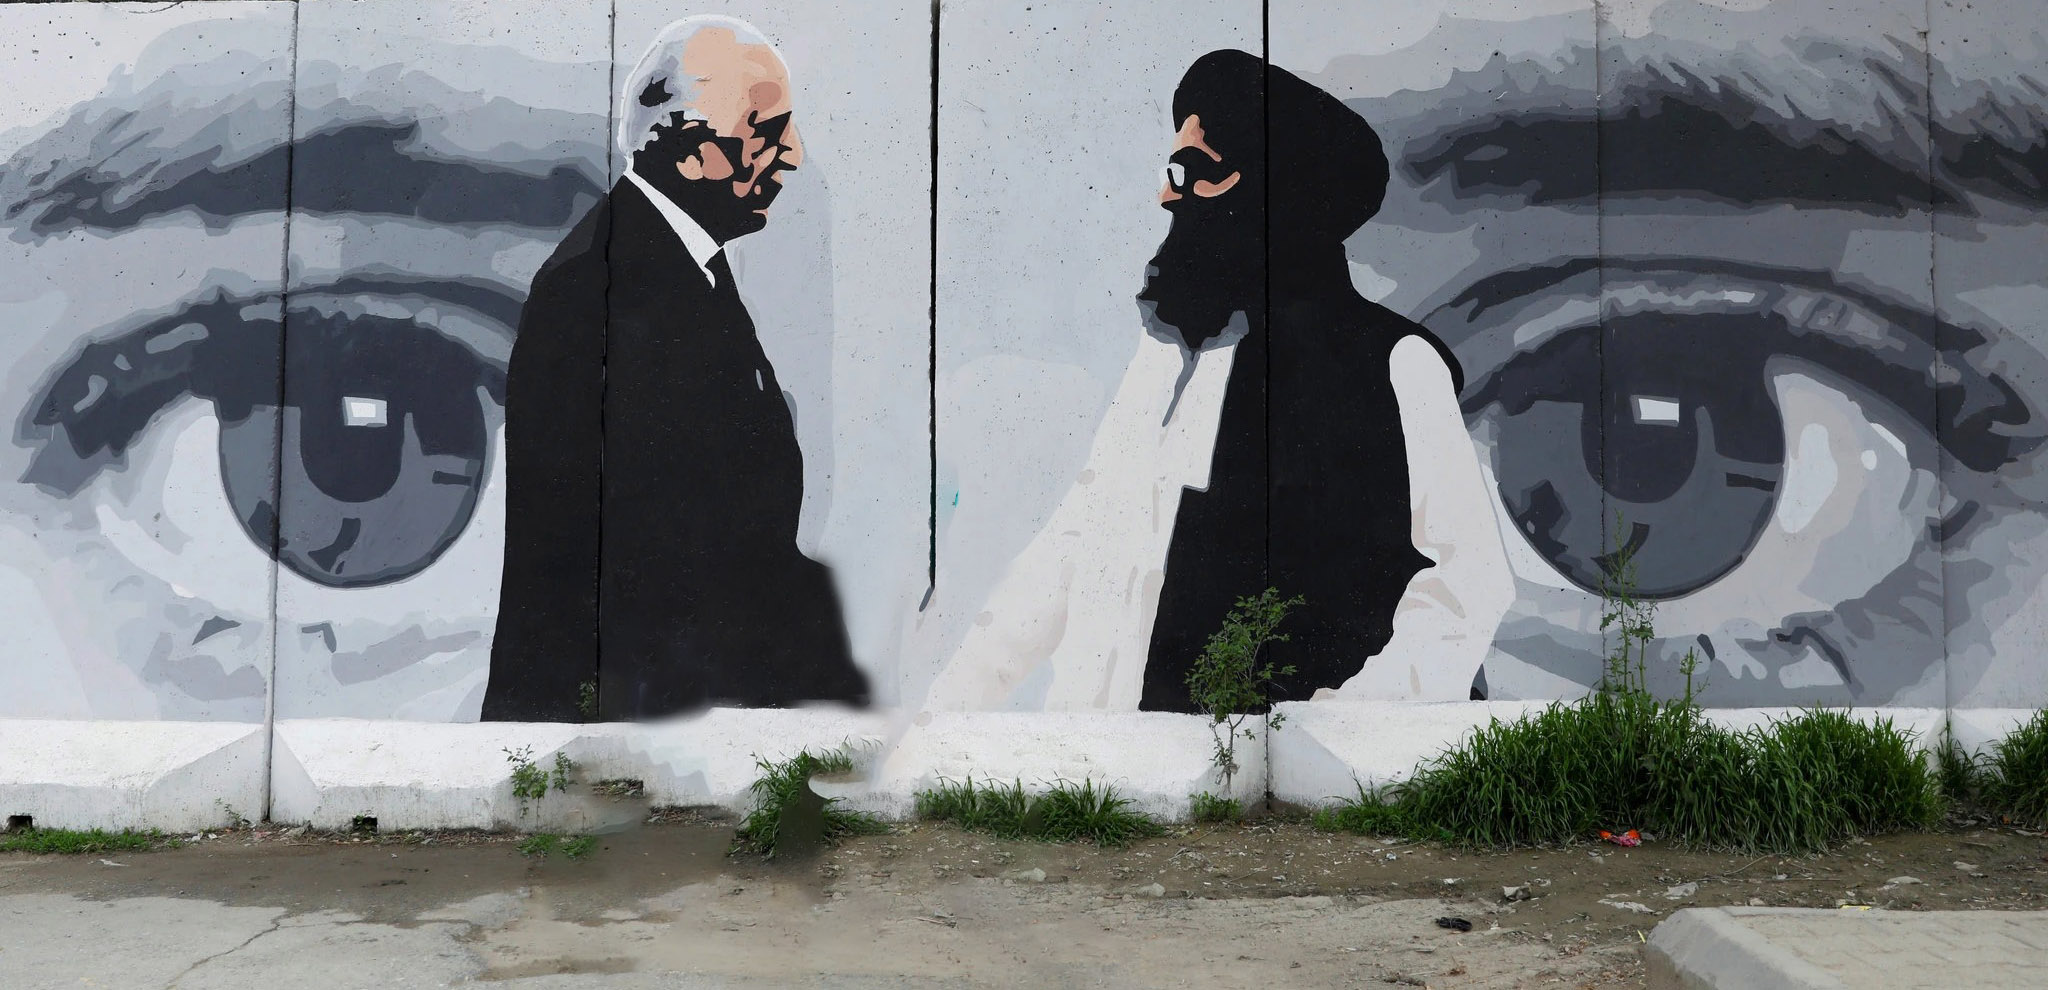 رمزگشایی از مذاکرات و گفتگوهای صلح میان امریکا و طالبان